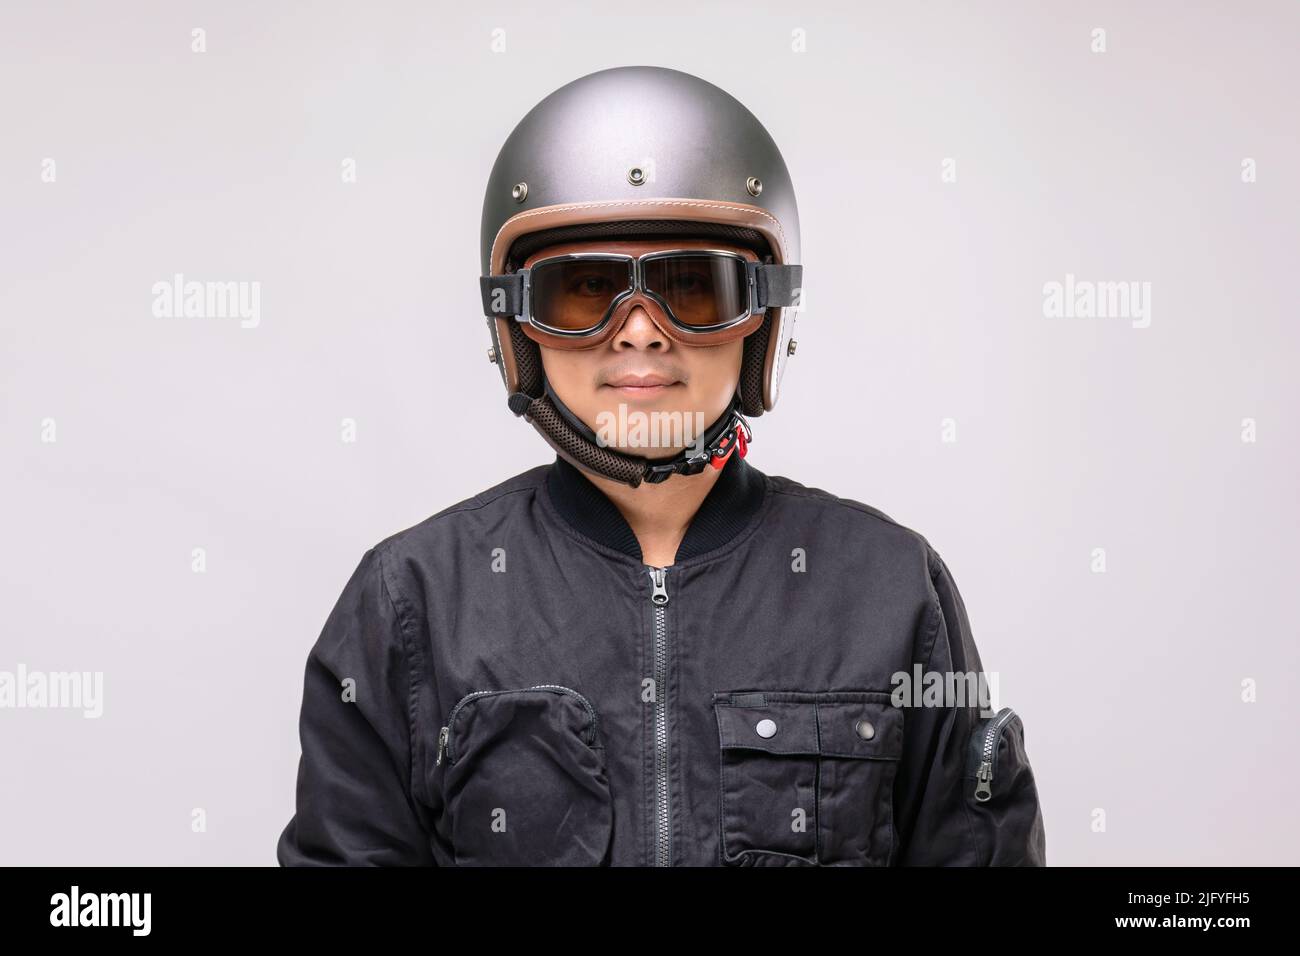 Motorradfahrer oder Fahrer mit Vintage-Helm. Sicheres Fahrkonzept. Studio auf grauem Hintergrund aufgenommen Stockfoto